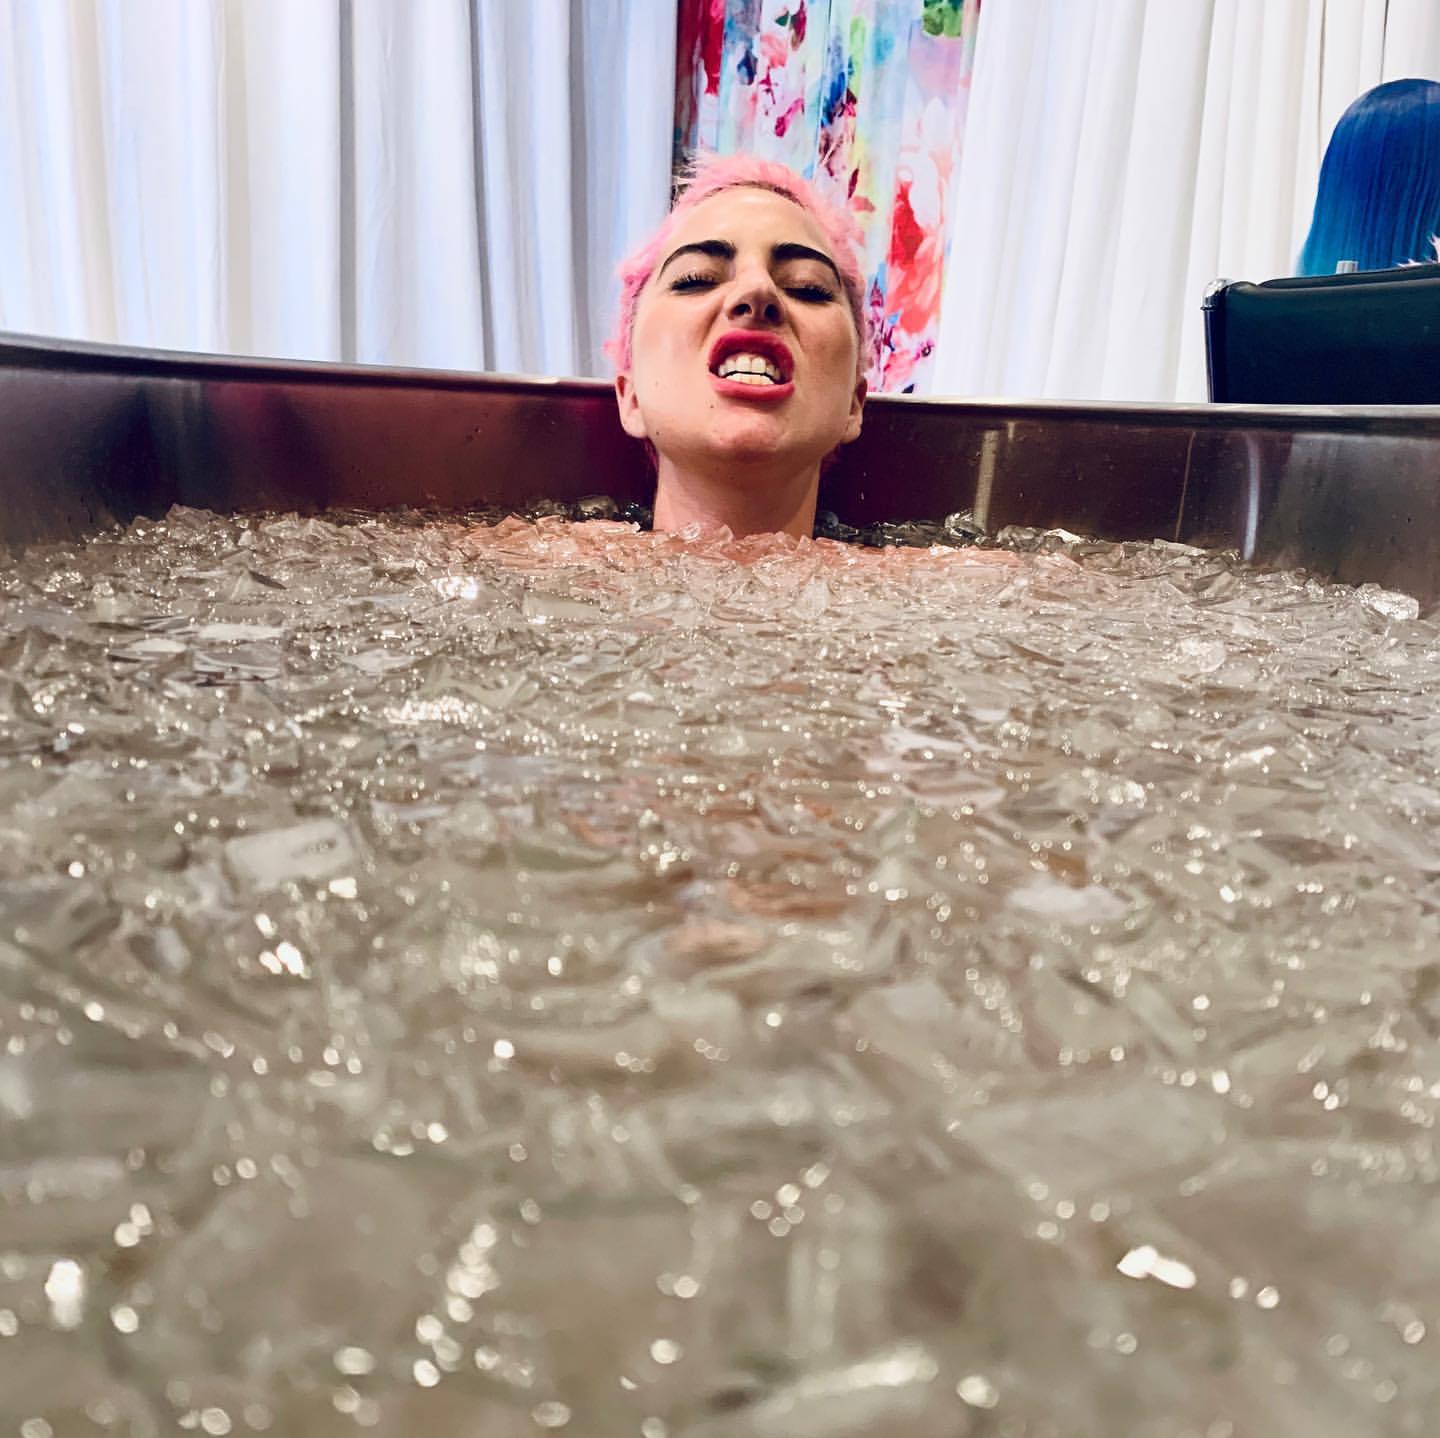 Lady Gaga â€“ Instagram and social media